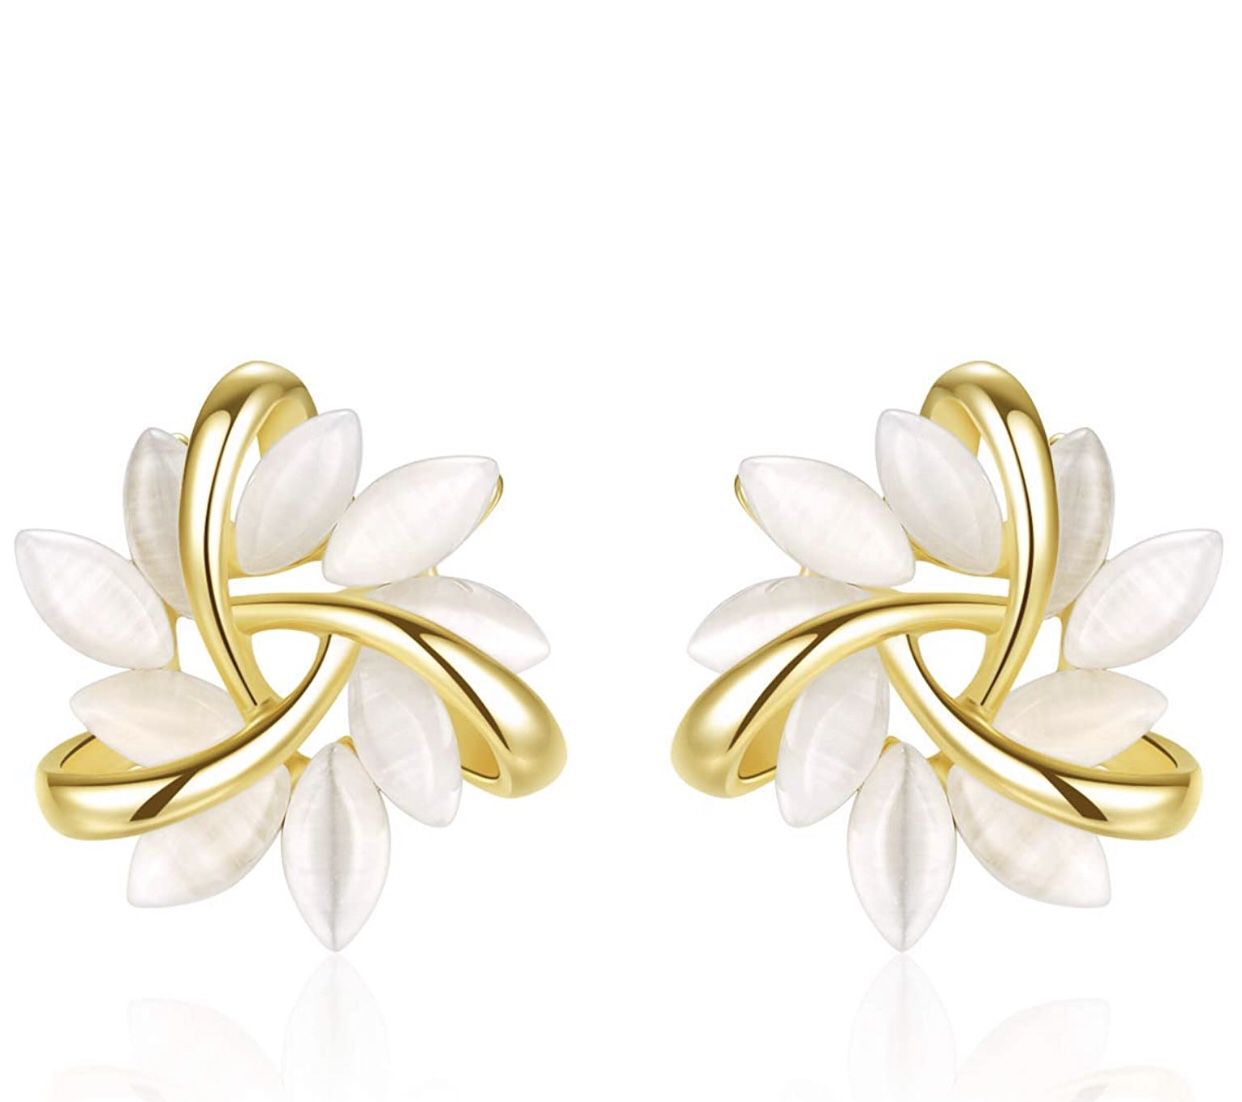 Flower Stud Earrings For Women Girls With White Moonstone Petal-Shaped Gold